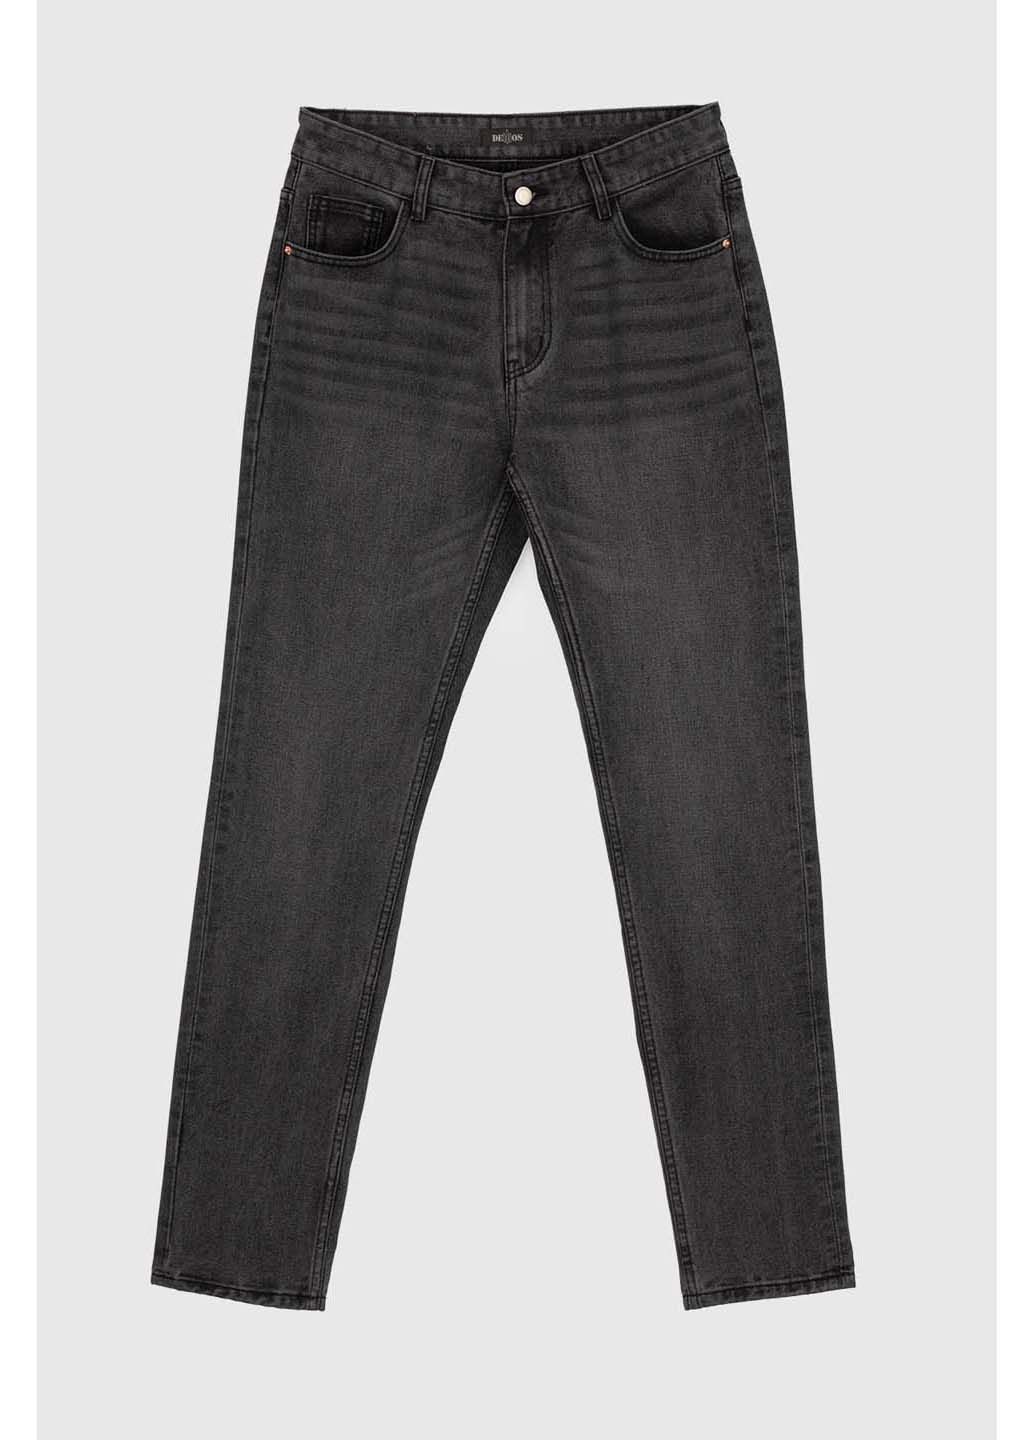 Темно-серые демисезонные джинсы Ren Tomogo